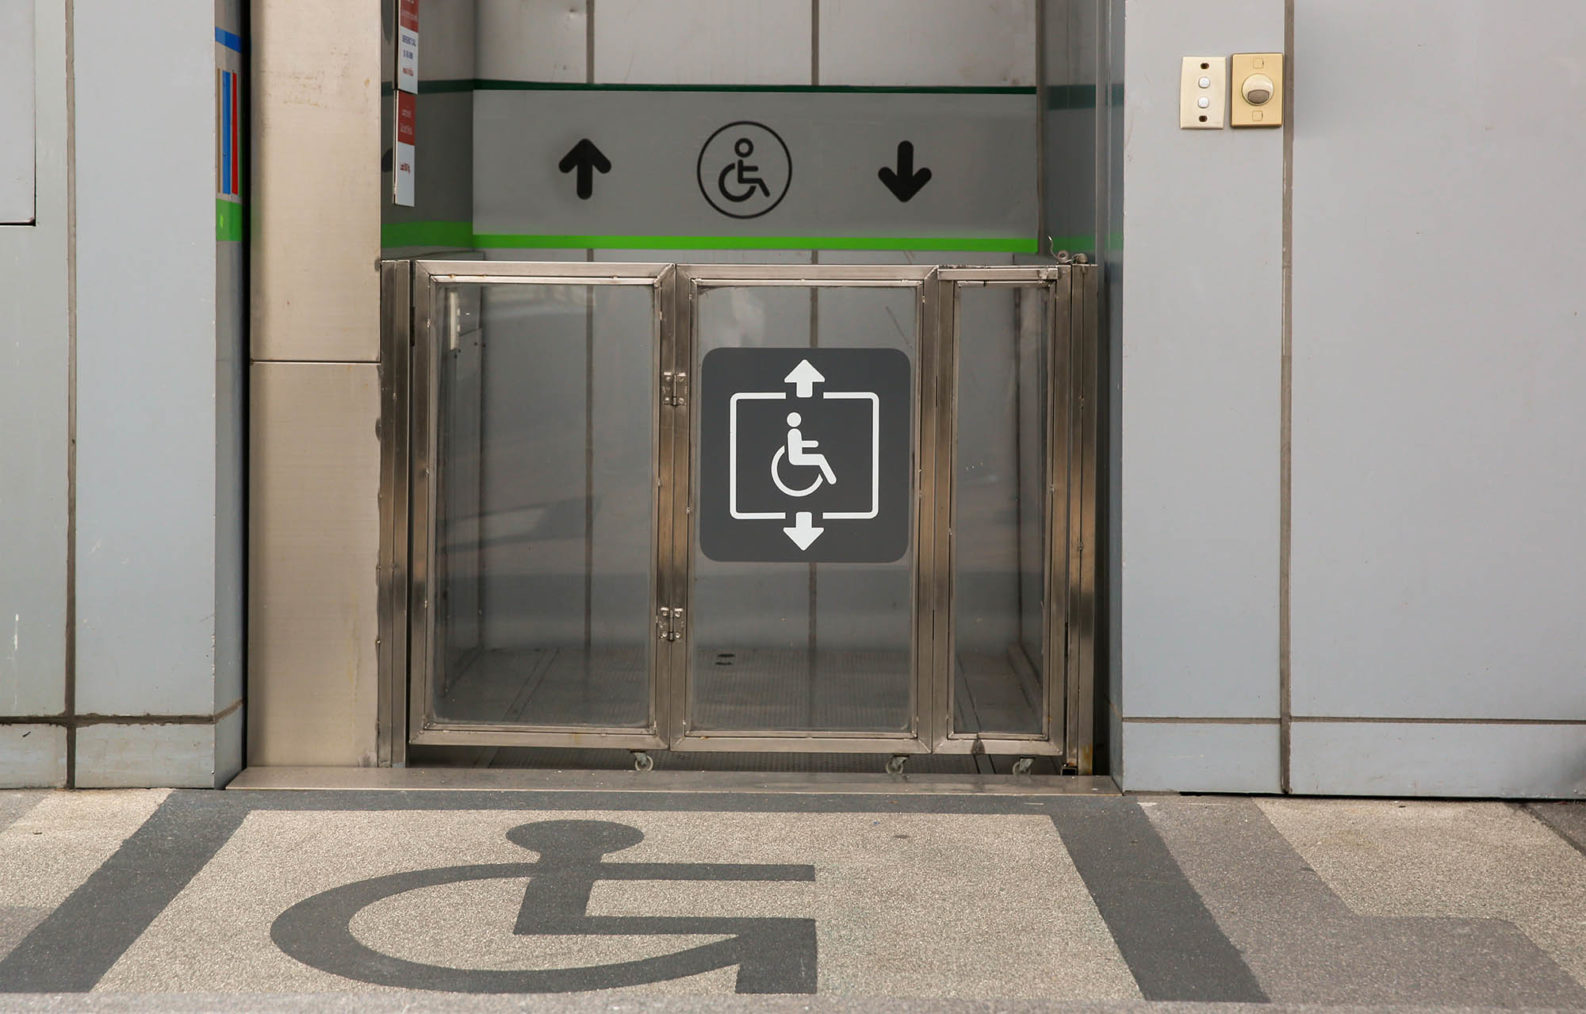 Bilde av heis med rullestol-piktobram både på gulvet foran og på heisdøren.